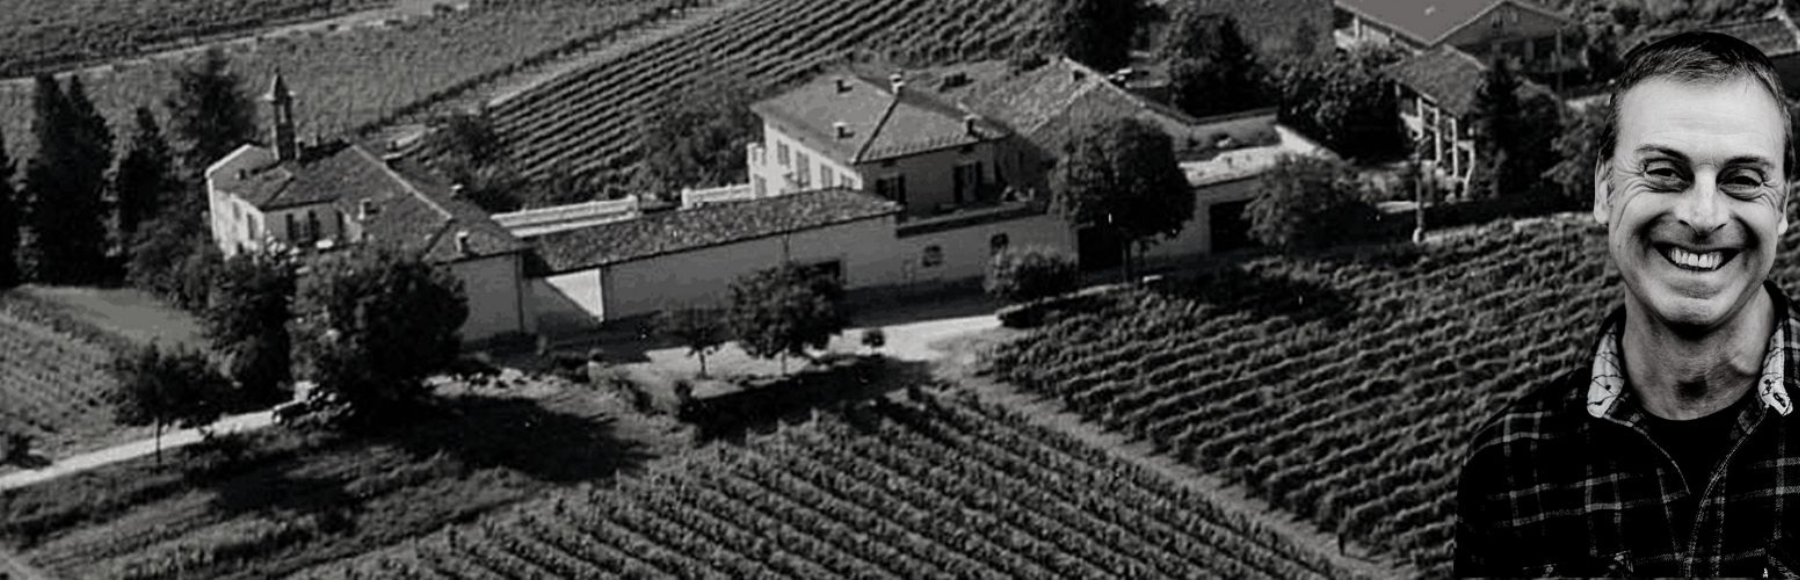 Vins naturels Ezio Trinchero - Piémont - Italie